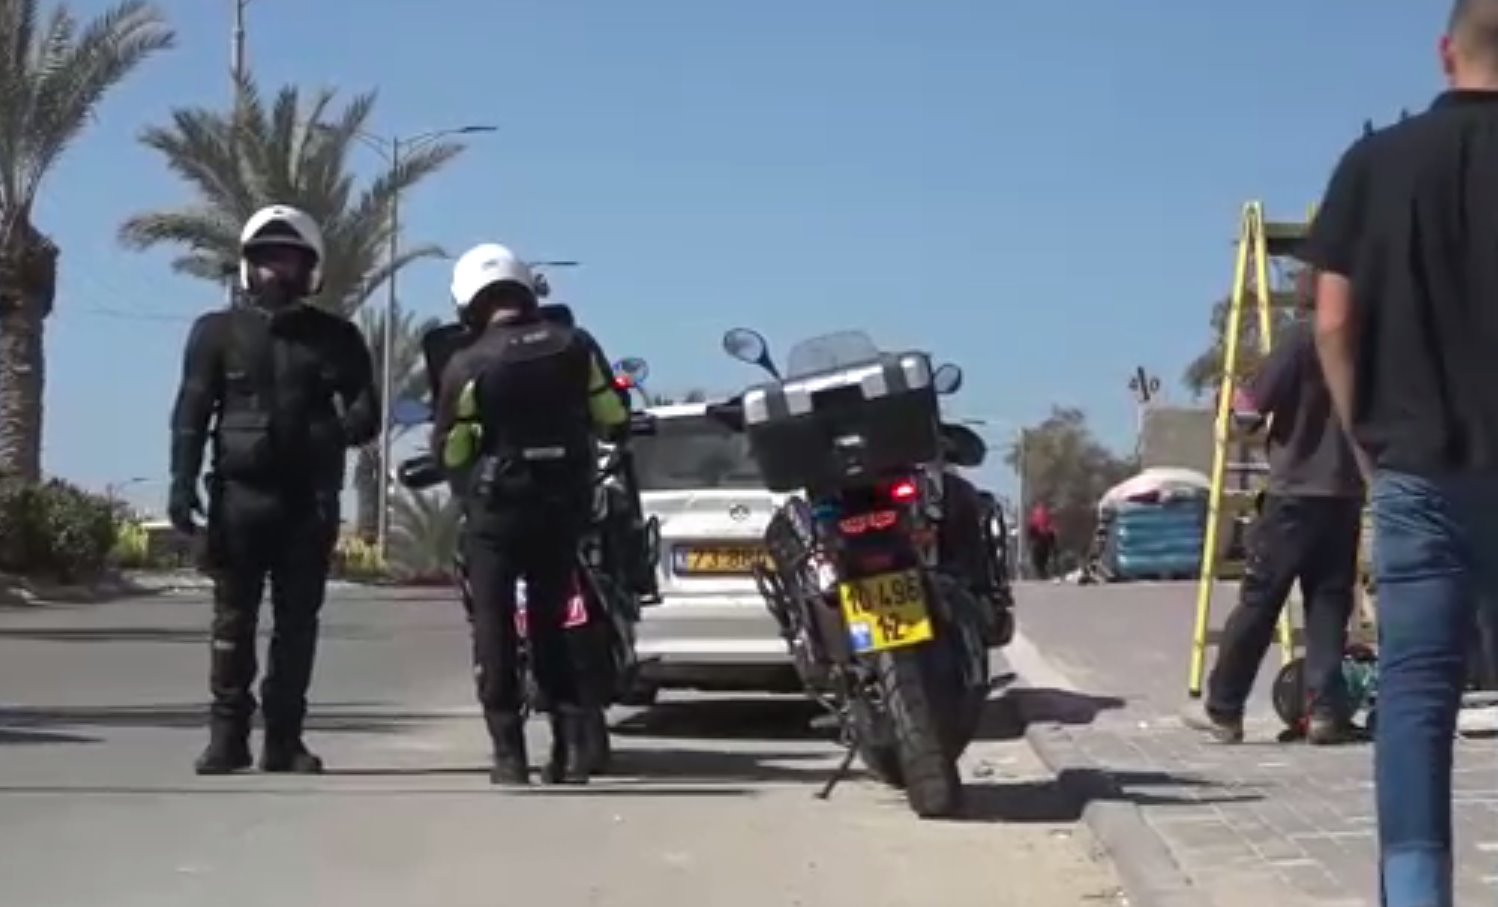  כמעט 100 נהגים נעצרו בפעילות במרחב הדרום. צילום ארכיון משטרת ישראל